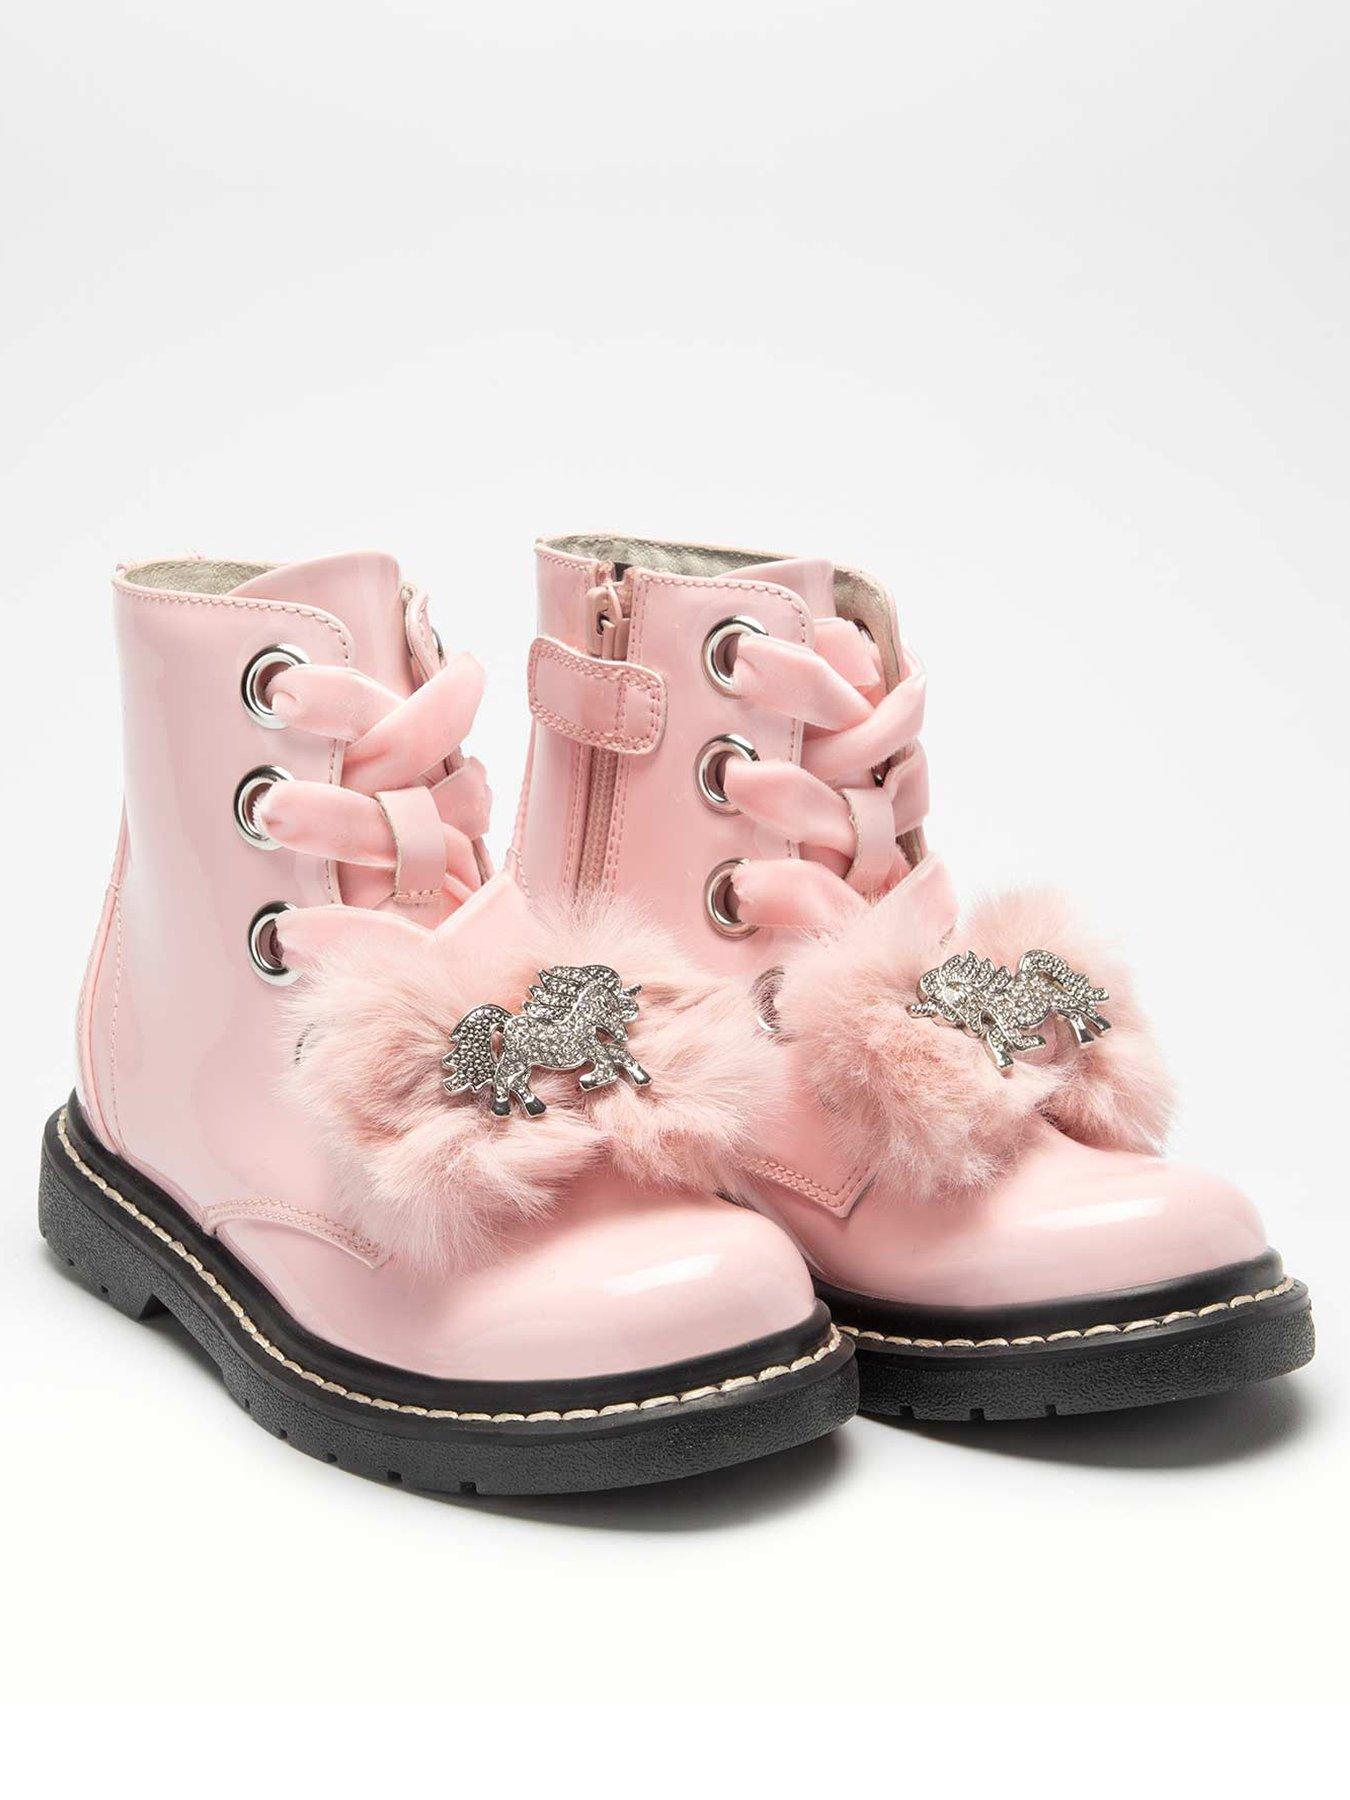 littlewoods girls boots